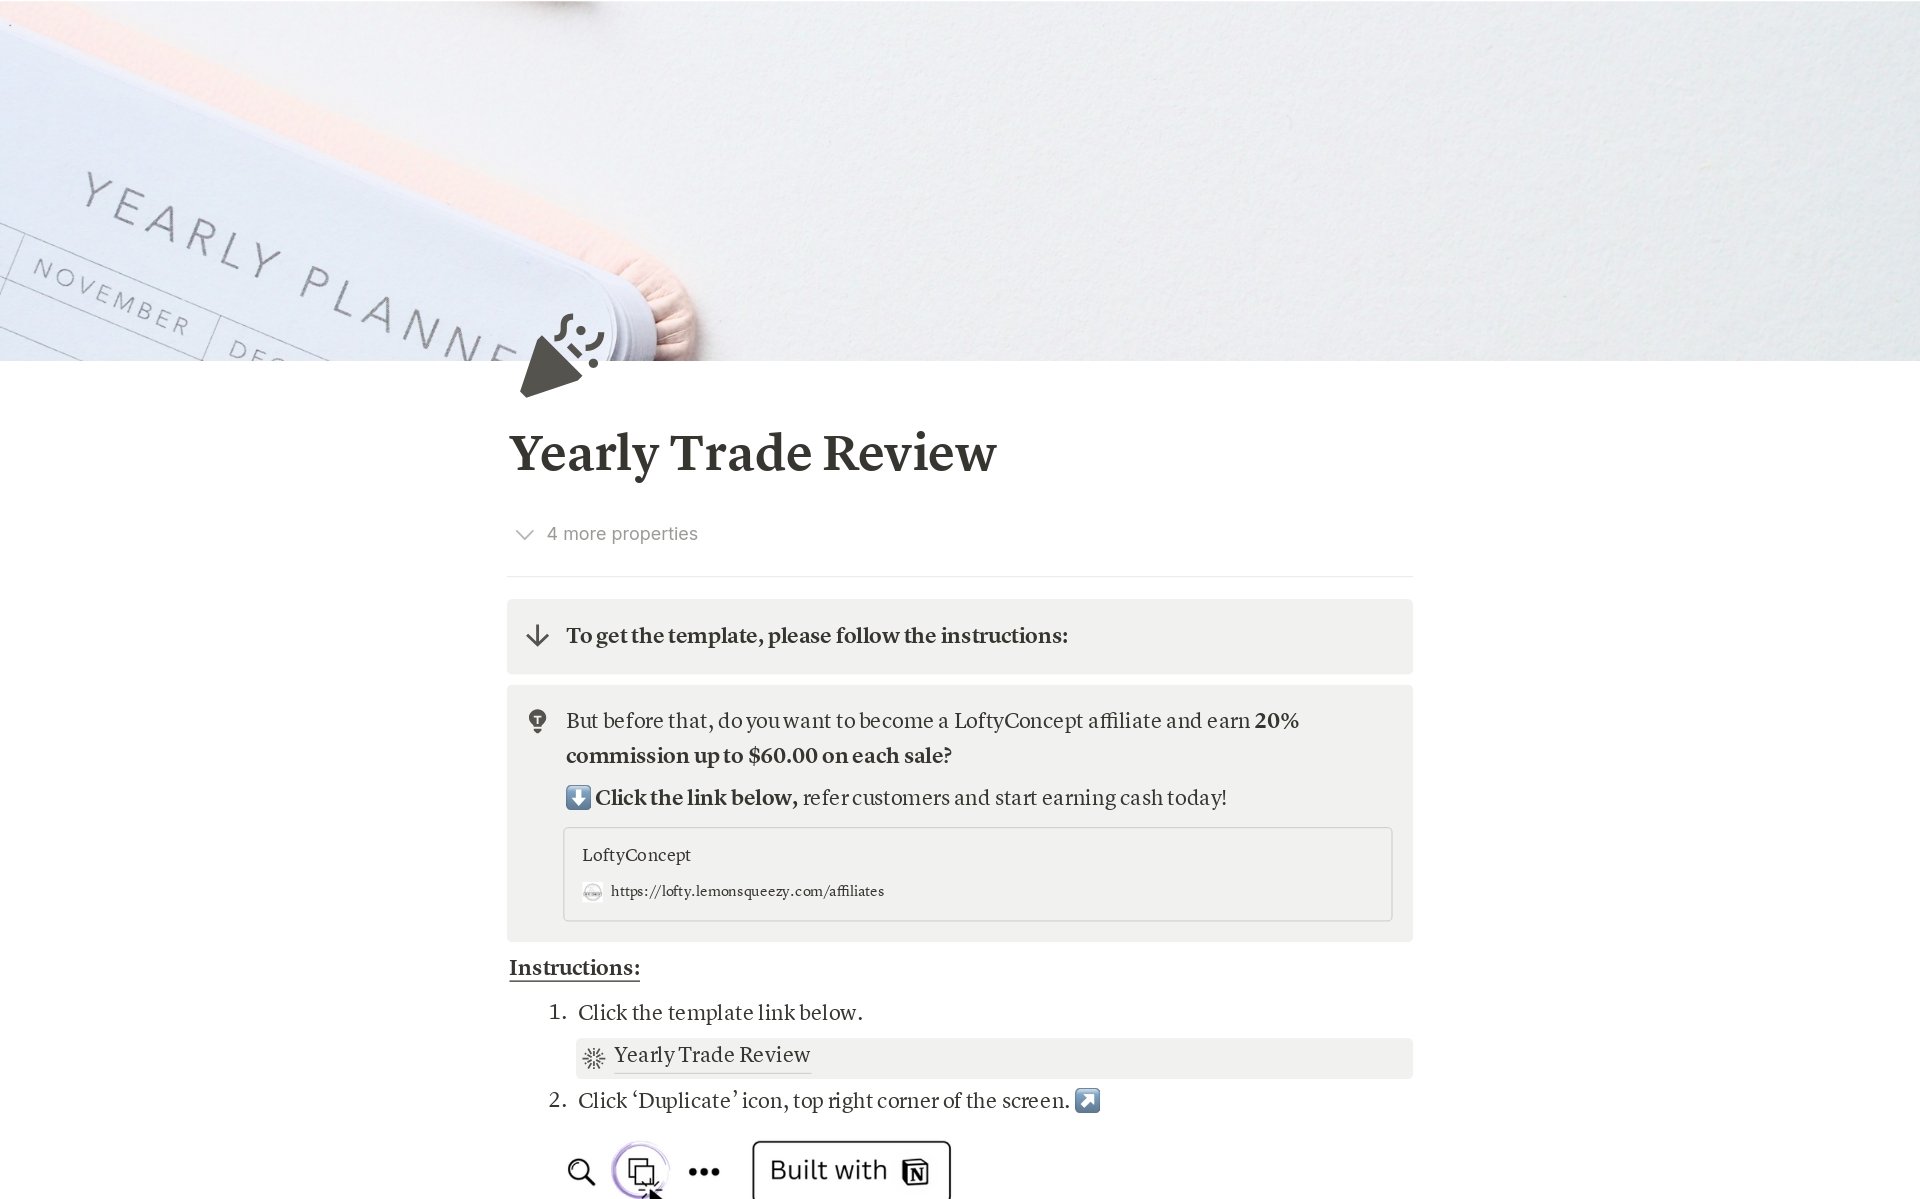 Vista previa de una plantilla para Yearly Trade Review